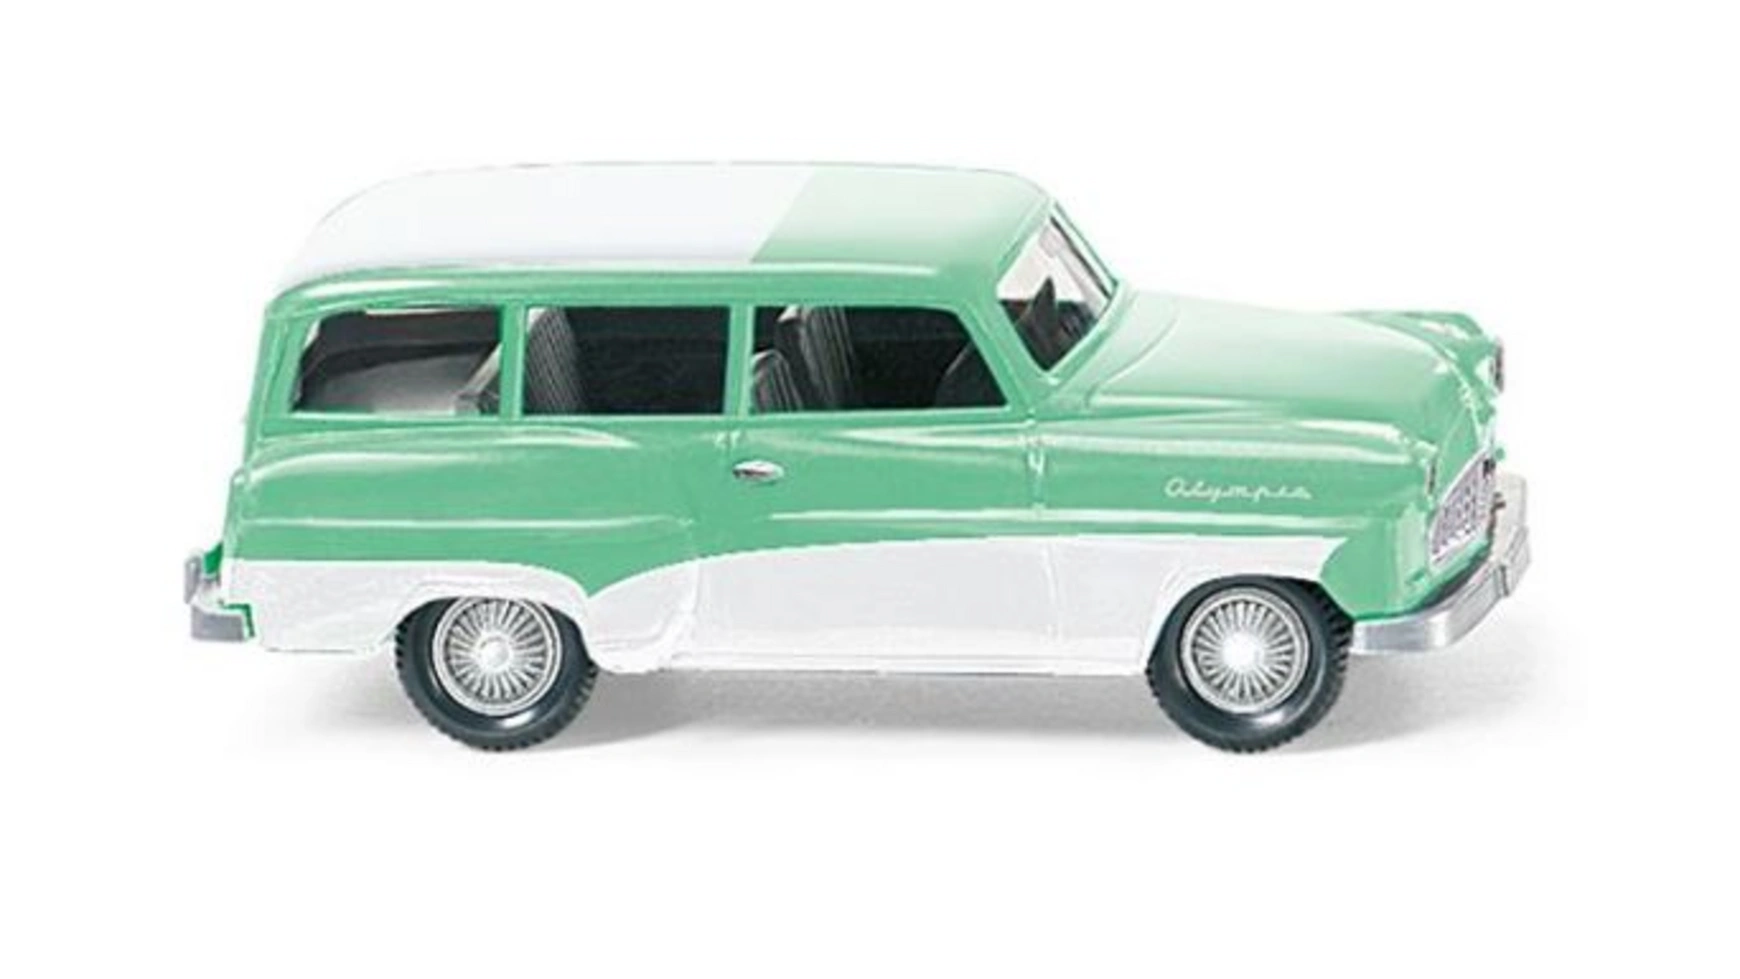 Wiking 1:87 Opel Caravan 1956 мятно-зеленый с белой крышей курсы фейслифтинга